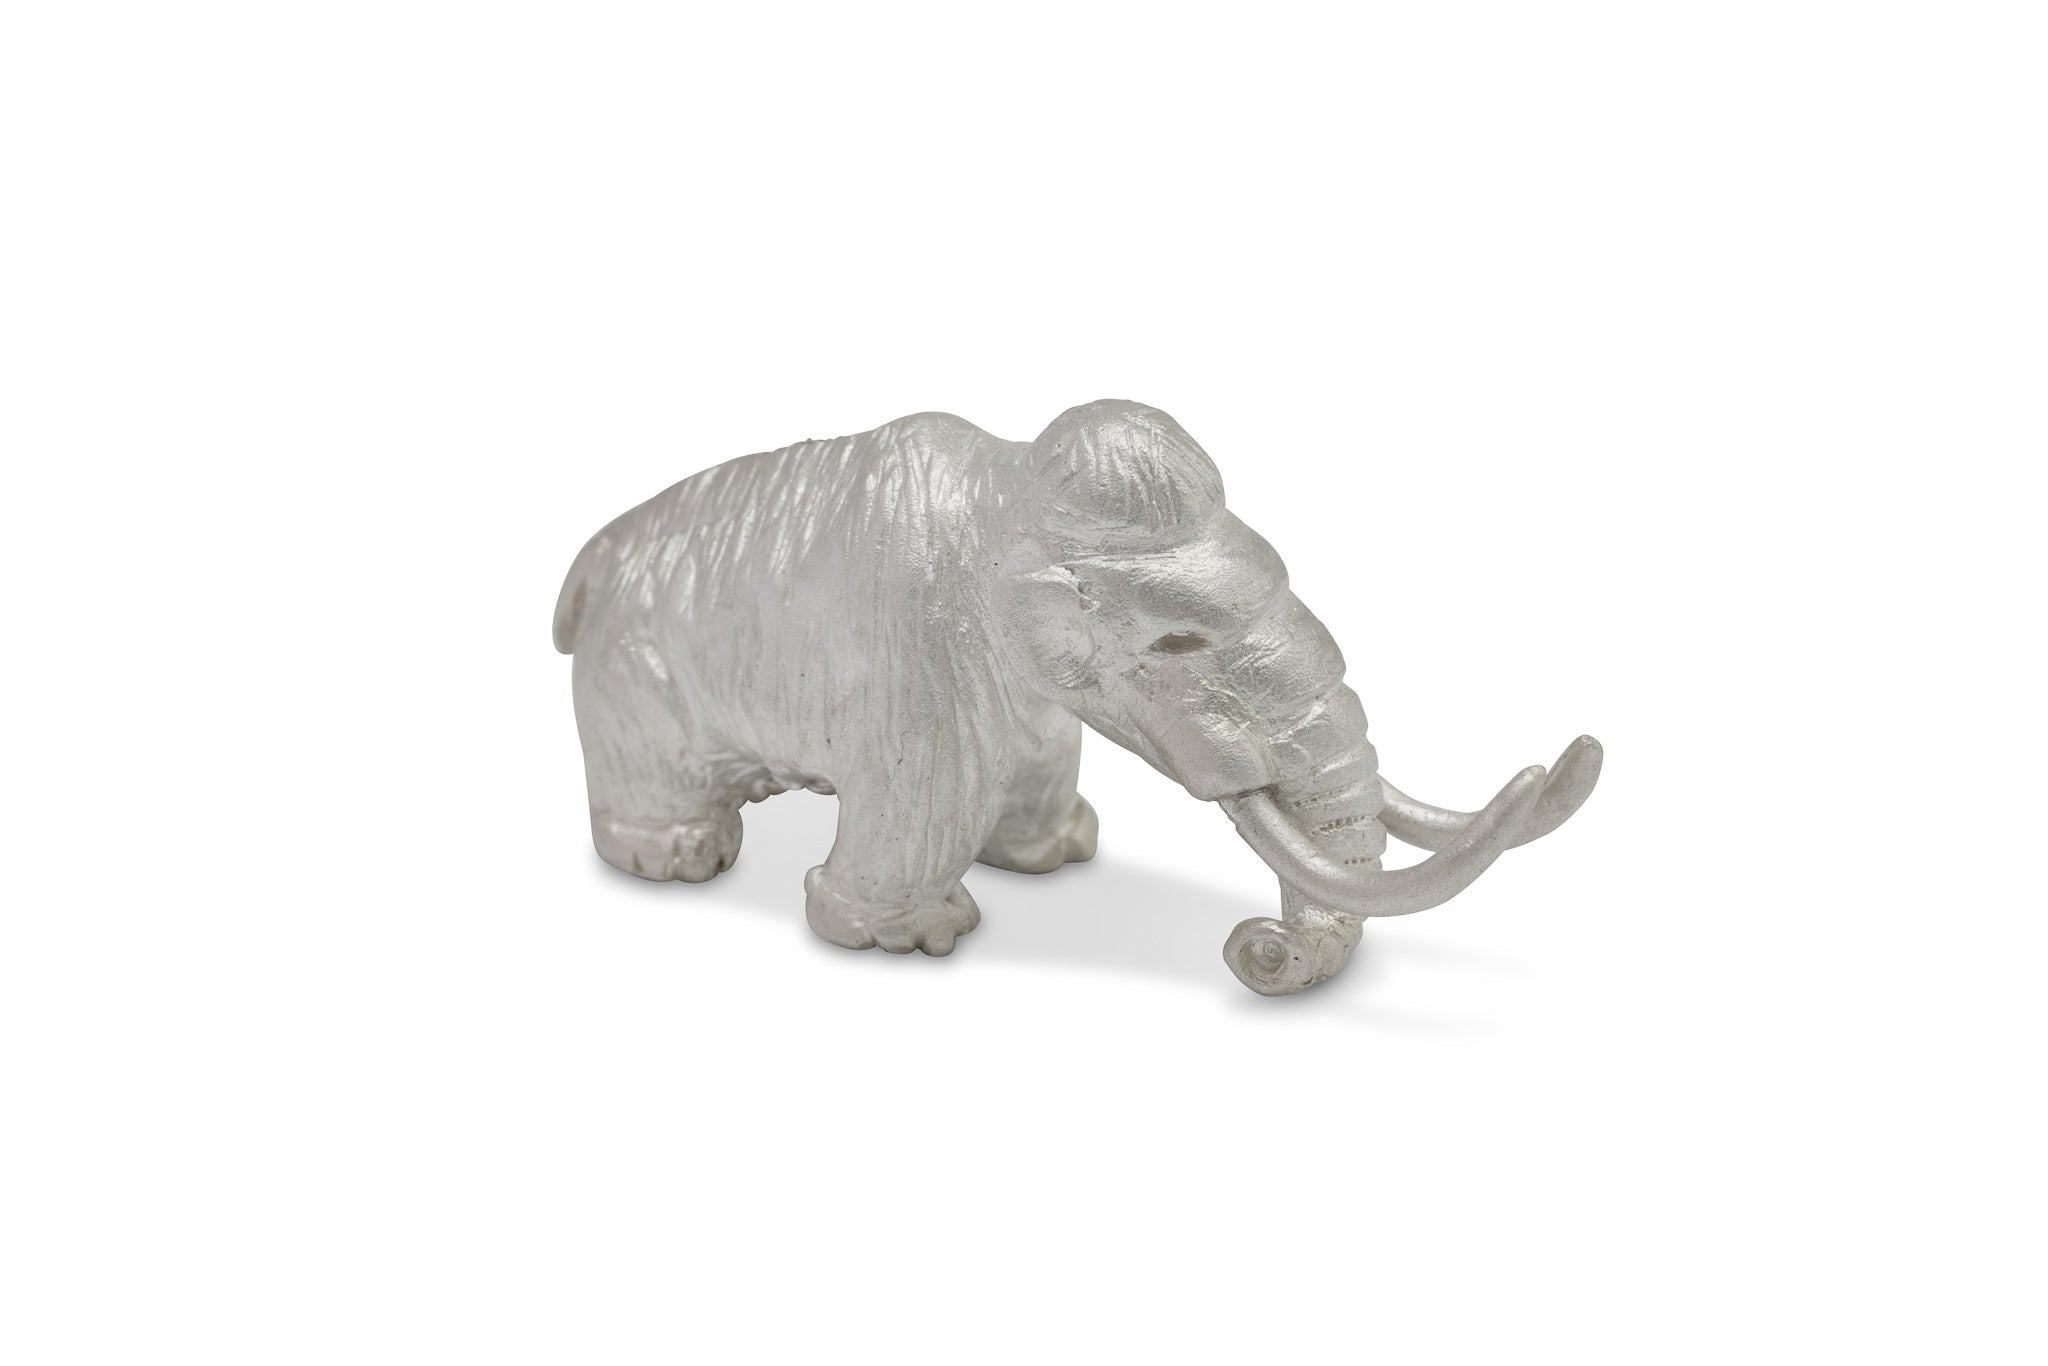 Winziges Mammut aus Silber - sehr detailliert ausgearbeitet